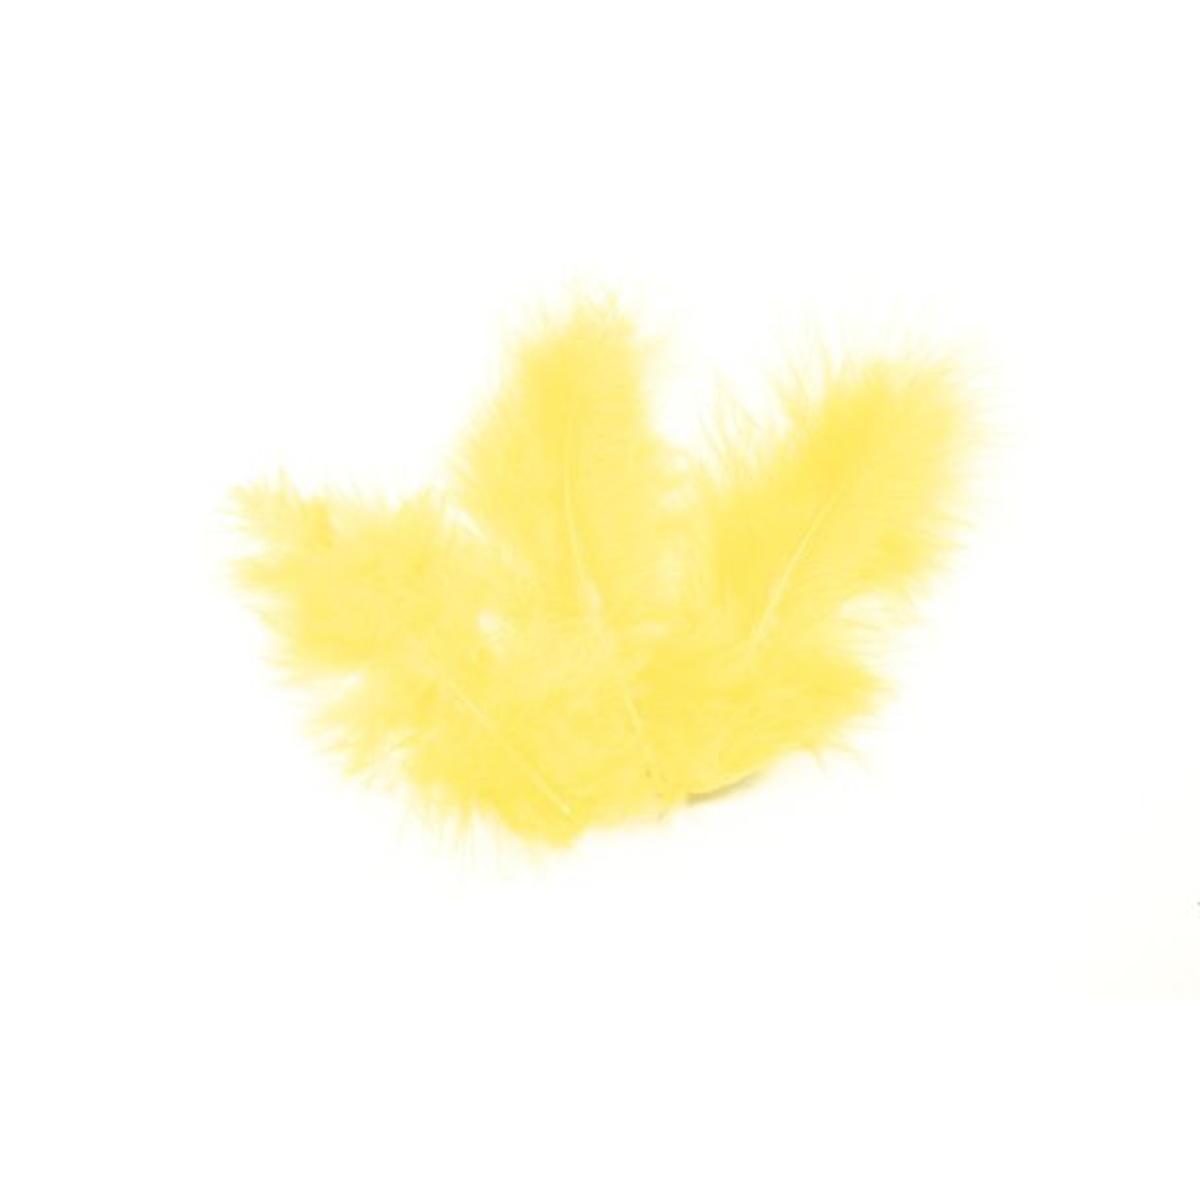 plumes x 20 env 10cm jaune pale